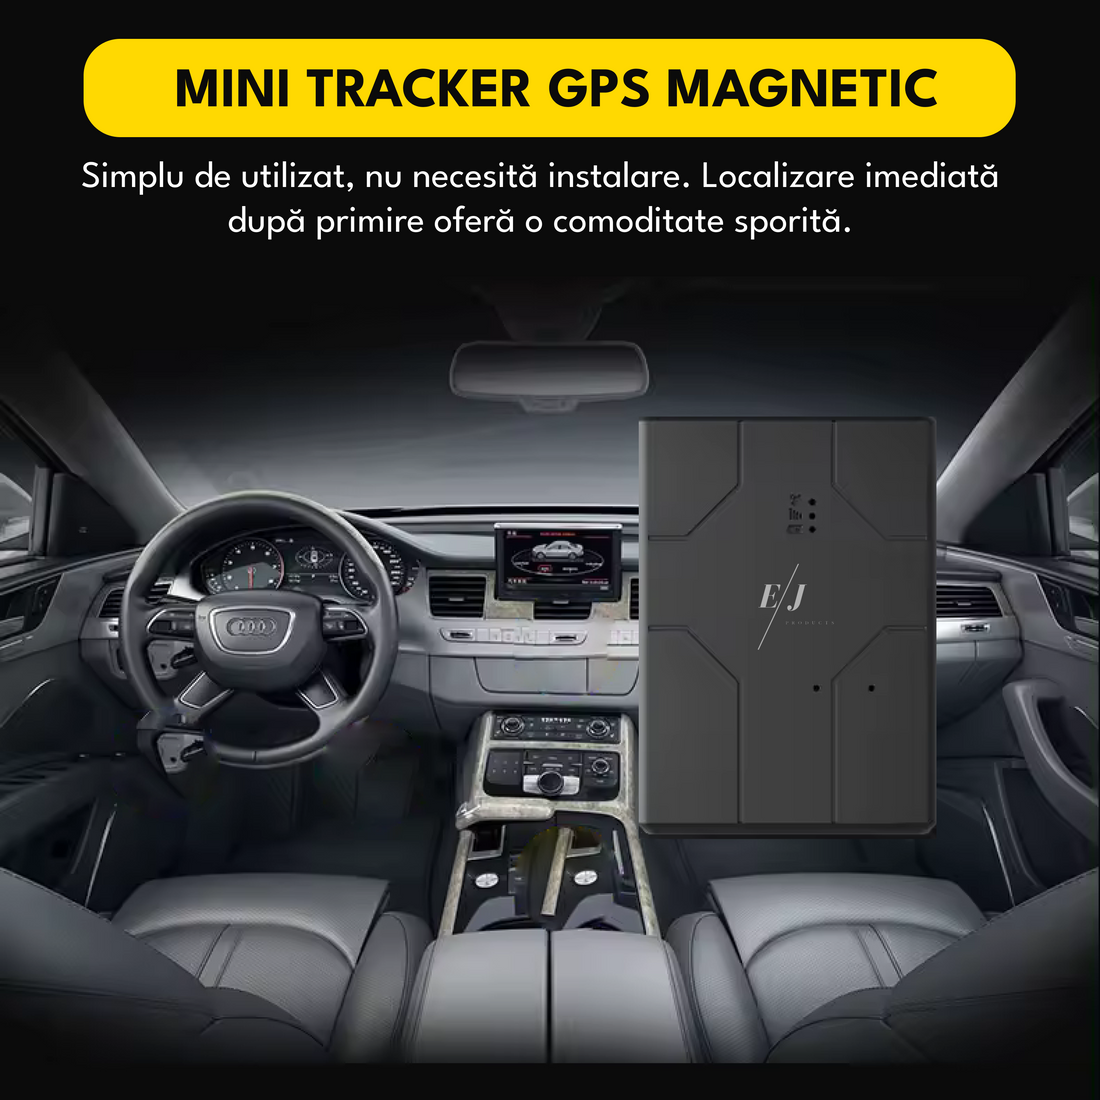 Mini tracker GPS 4G, Q16, pozitionare in timp real, autonomie 7 zile, standby 30 zile, inregistrare audio, control de la distanta, precizie locatie 99%, rezistent la apa IP67